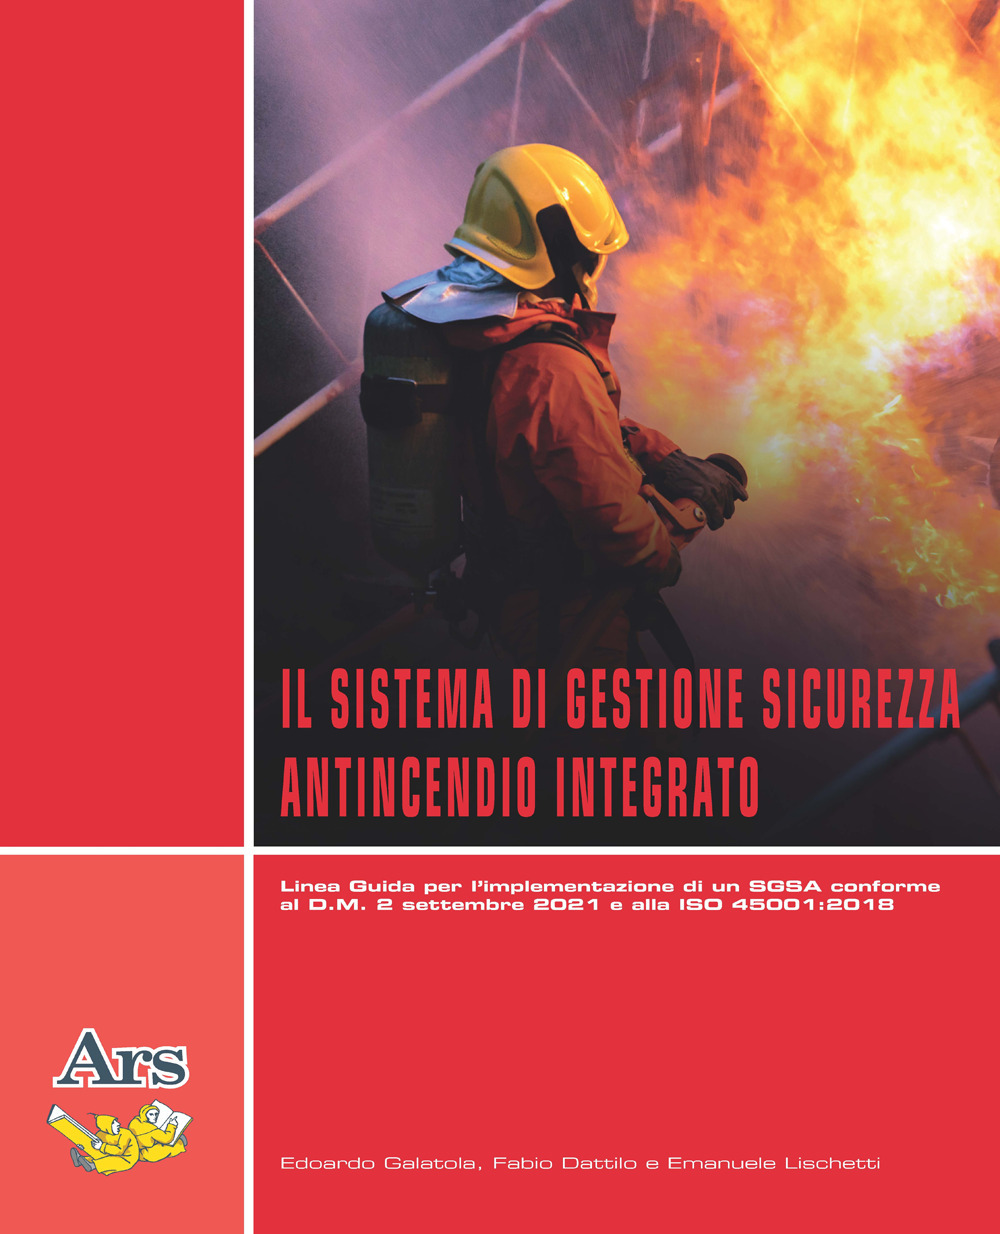 Il sistema di gestione sicurezza antincendio integrato. Linea guida per l'implementazione di un SGSA conforme al D.M. 2 settembre 2021 e alla ISO 45001:2018